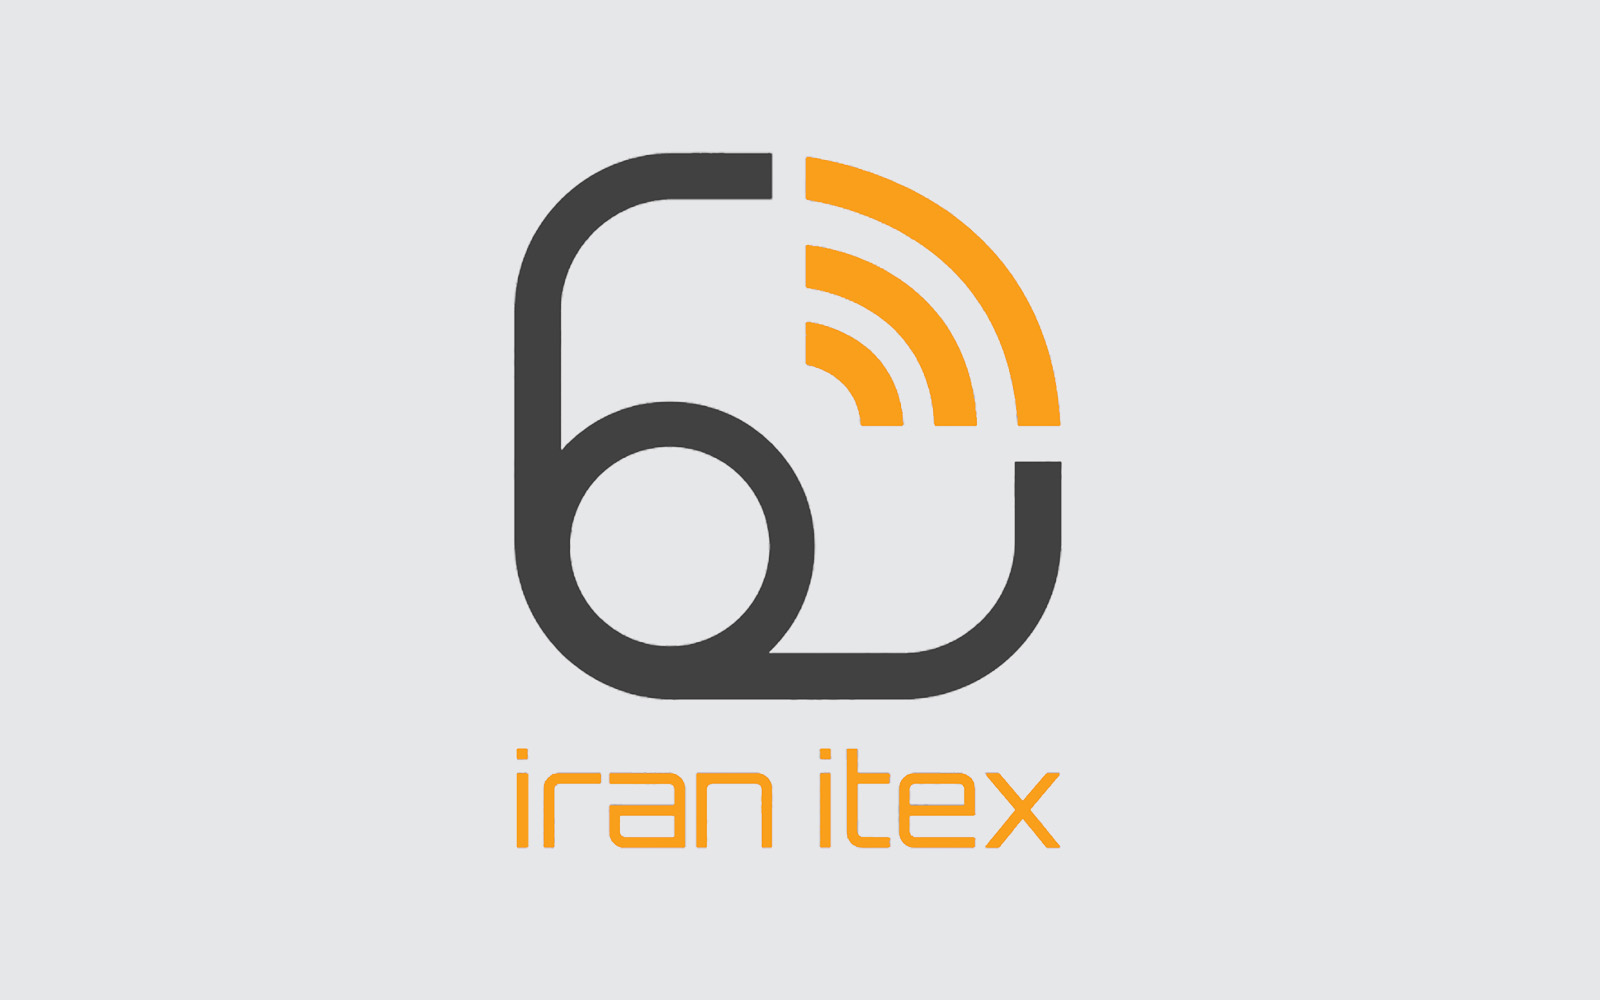 دومین دوره نمایشگاه ایران ایتکس برگزار می‌شود / عرضه فناوری های نوین و دستاورد های جدید